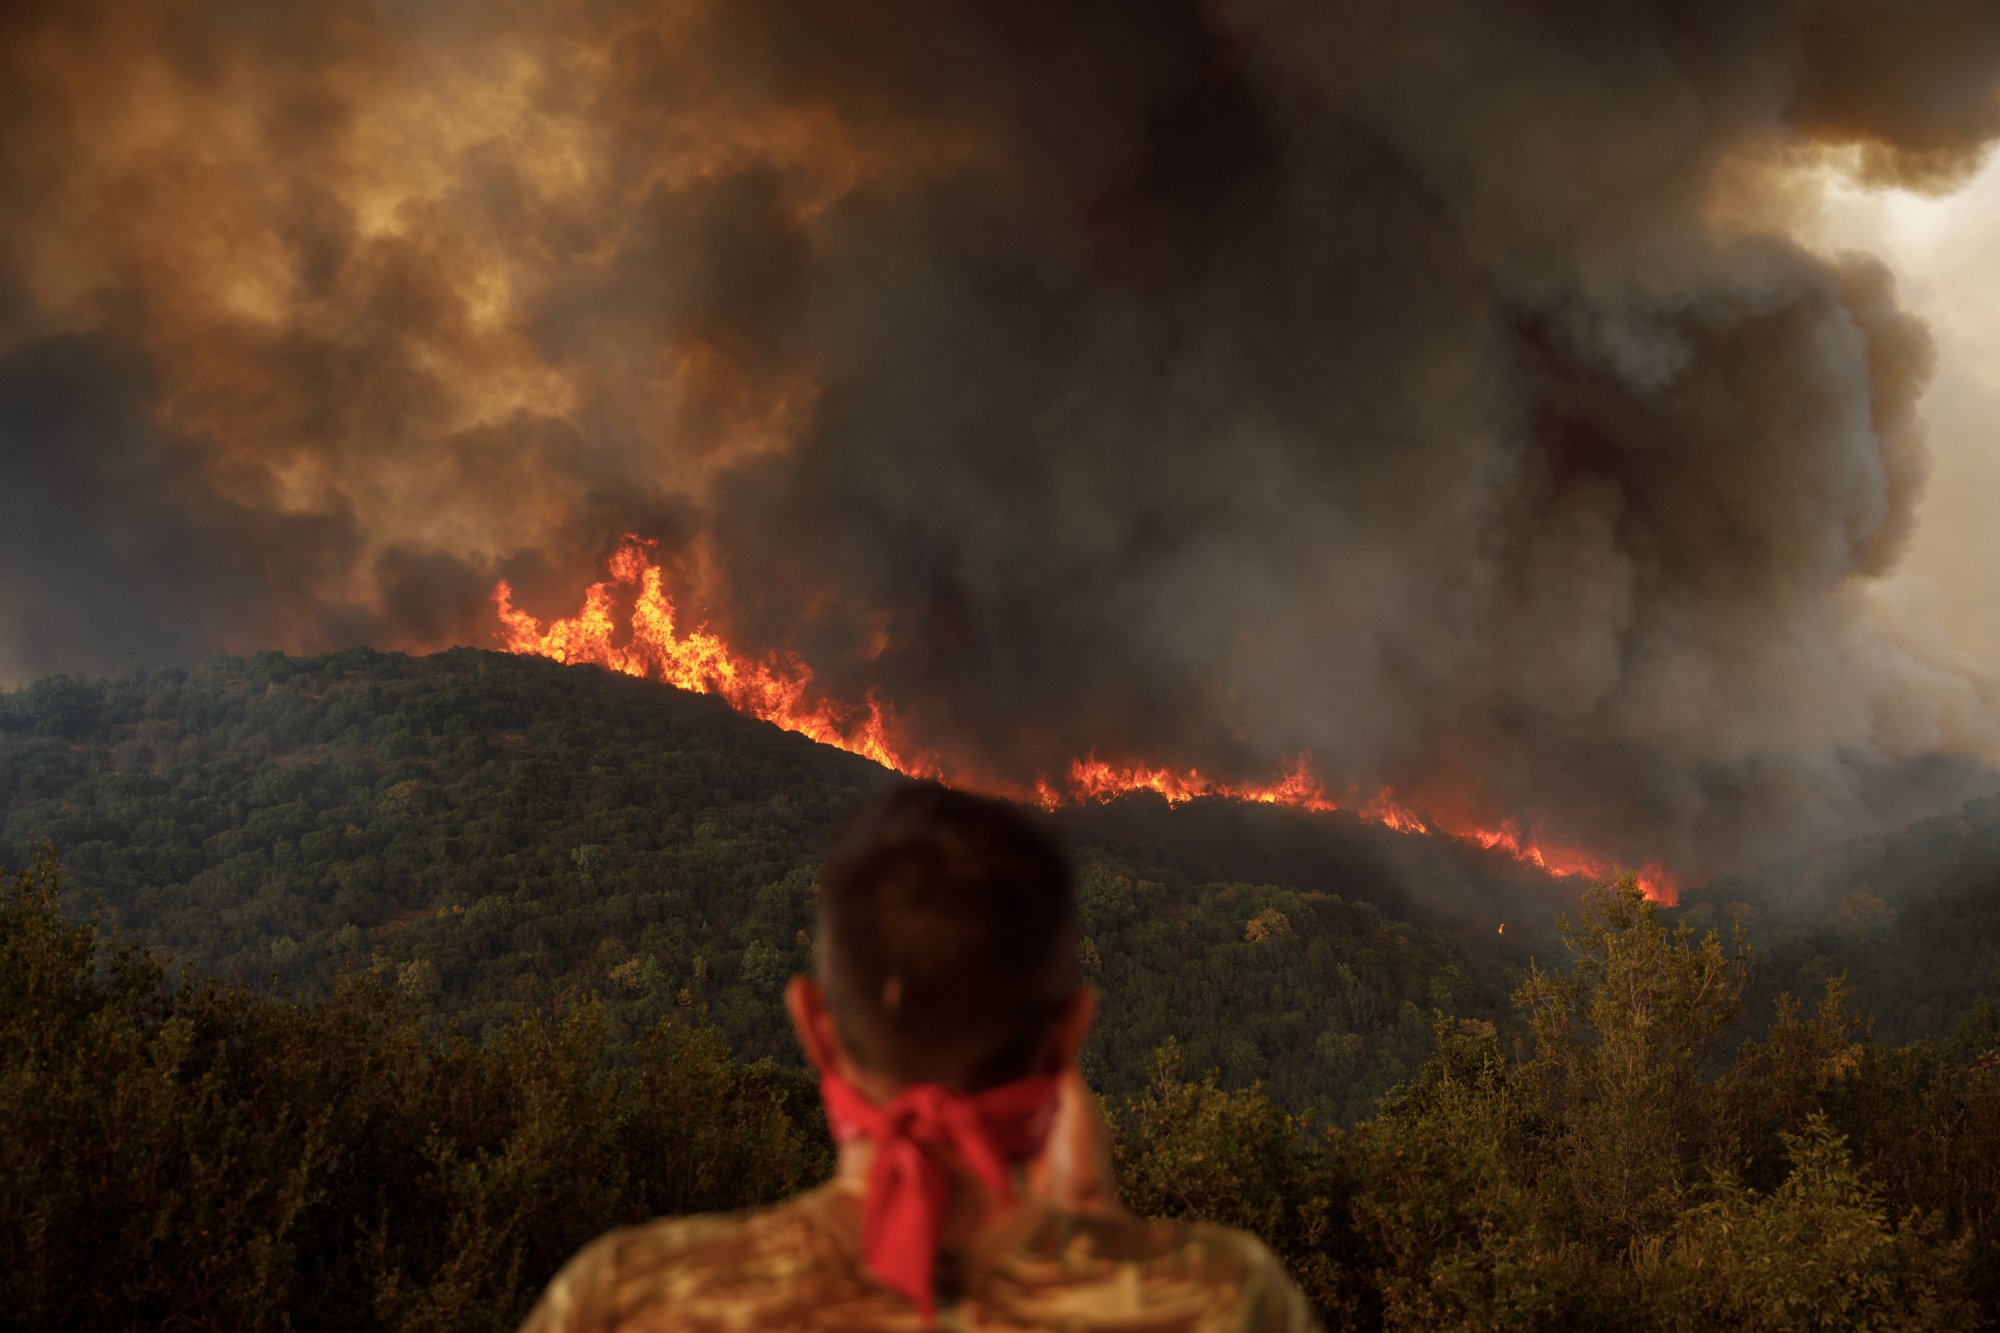 Διεθνής Αμνηστία: Οι νεκροί από τις πυρκαγιές στη Β. Ελλάδα φαίνεται να είναι θύματα δύο τεράστιων αδικιών της εποχής μας